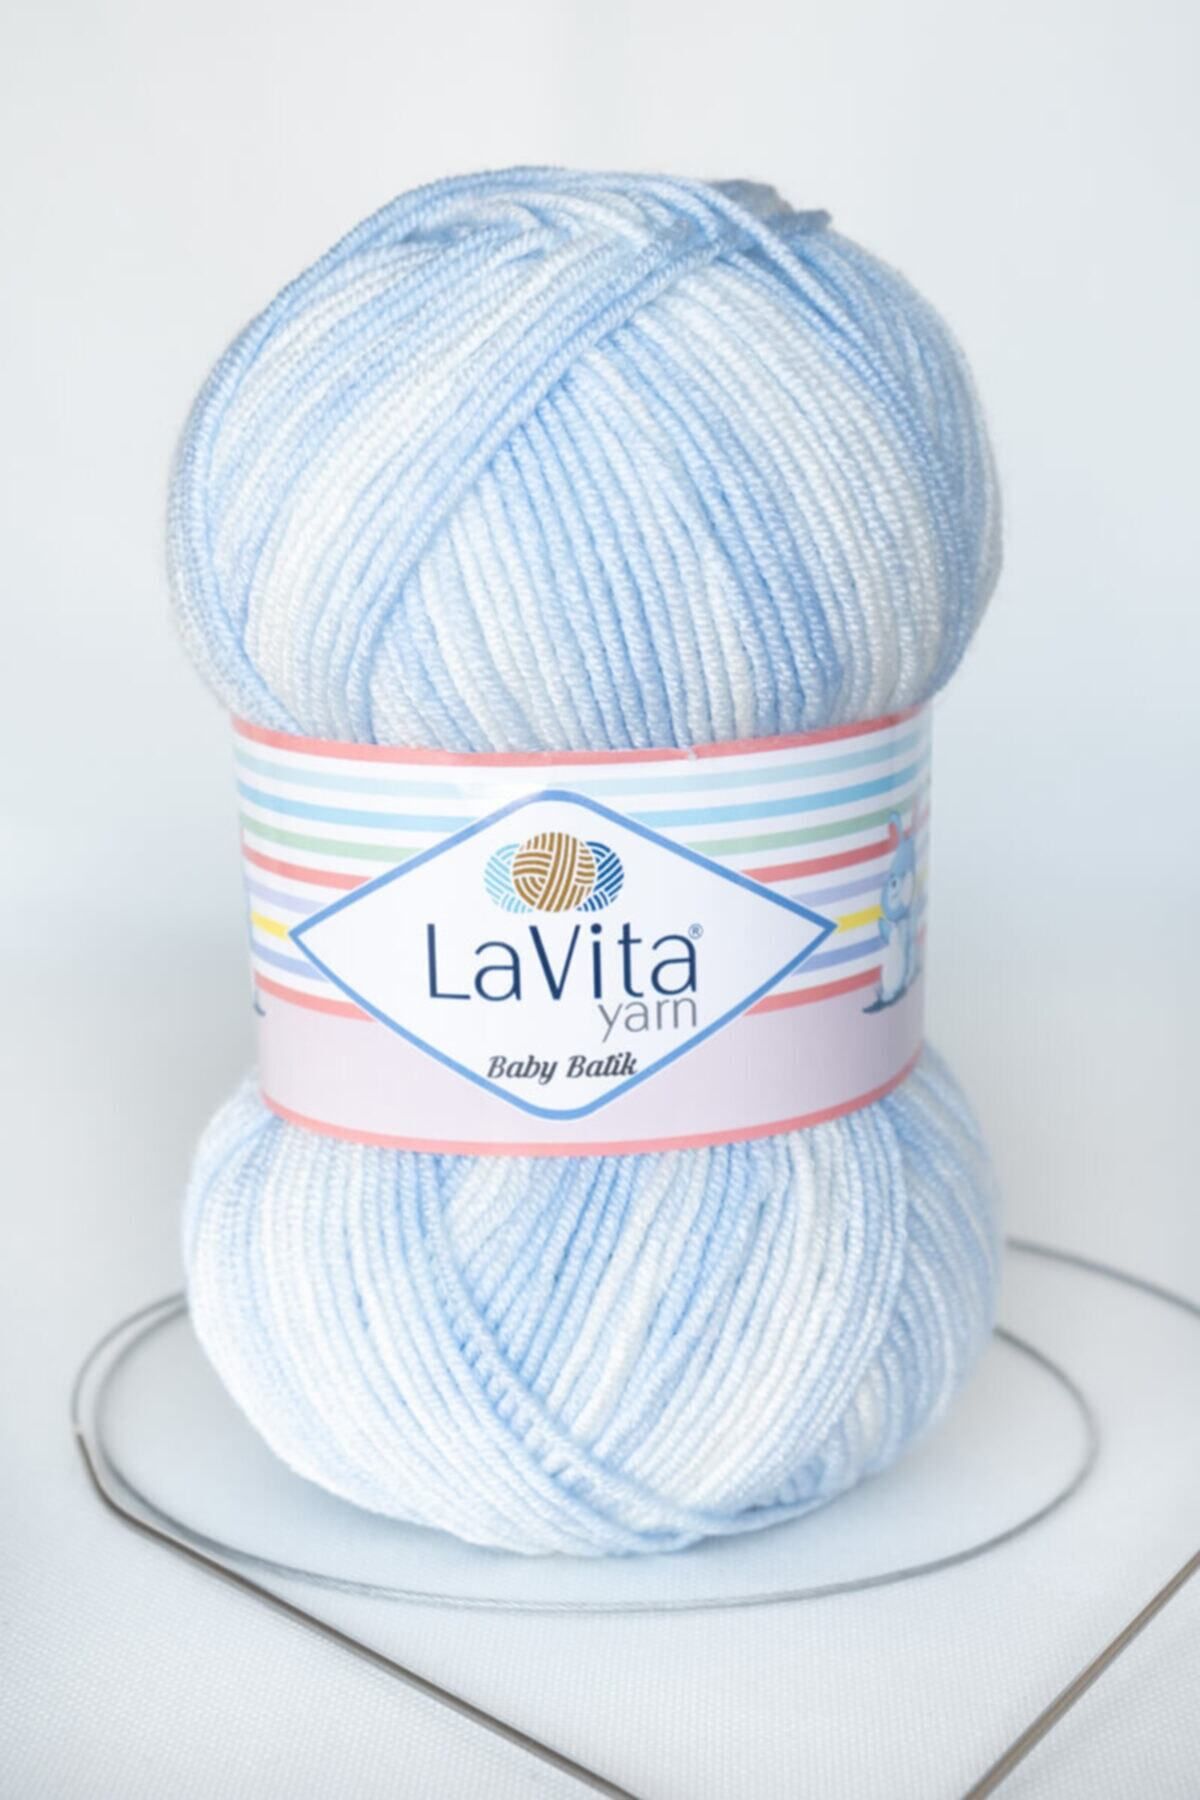 LaVita Yarn Baby Batik El Örgü Ipi Taka Yarn (by04-turkuaz)